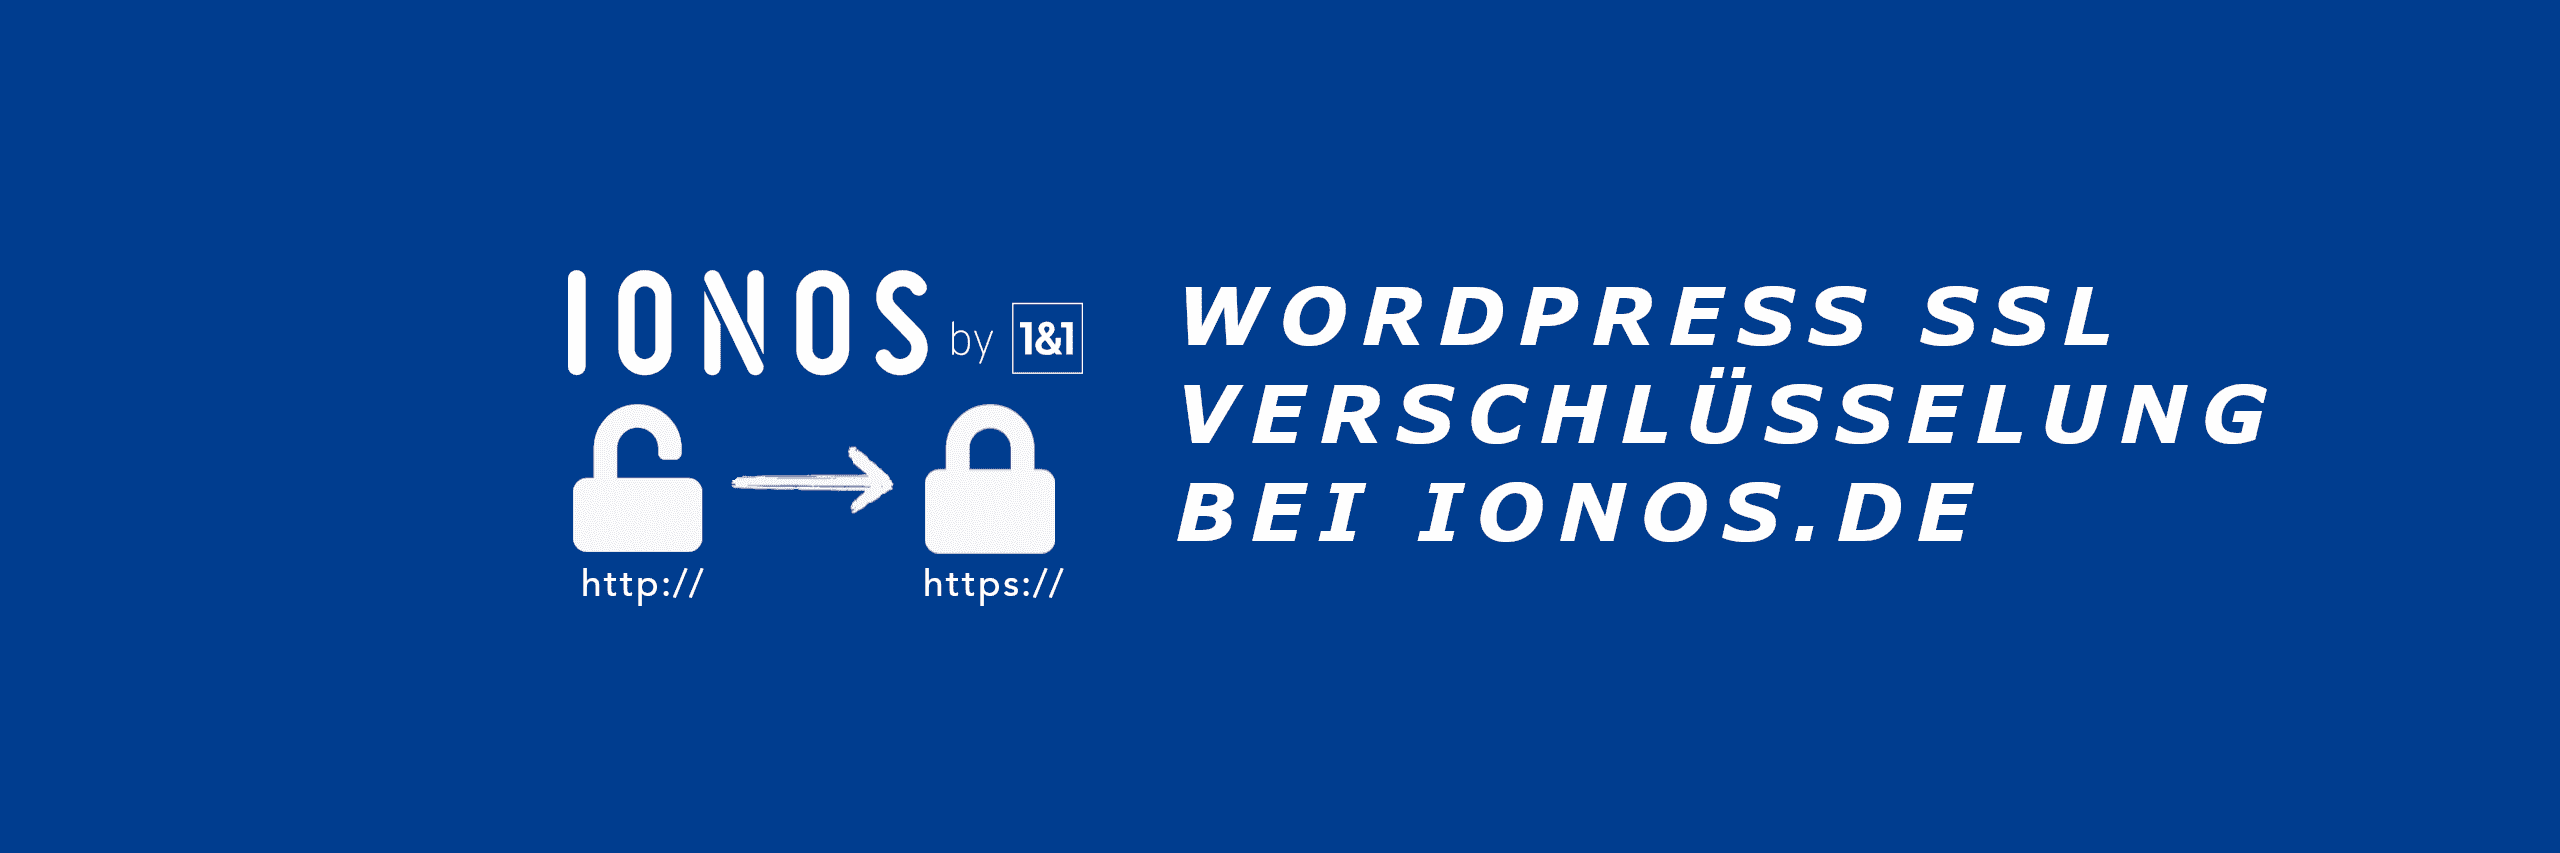 WordPress SSL Verschluesselung bei 11 Ionos.de